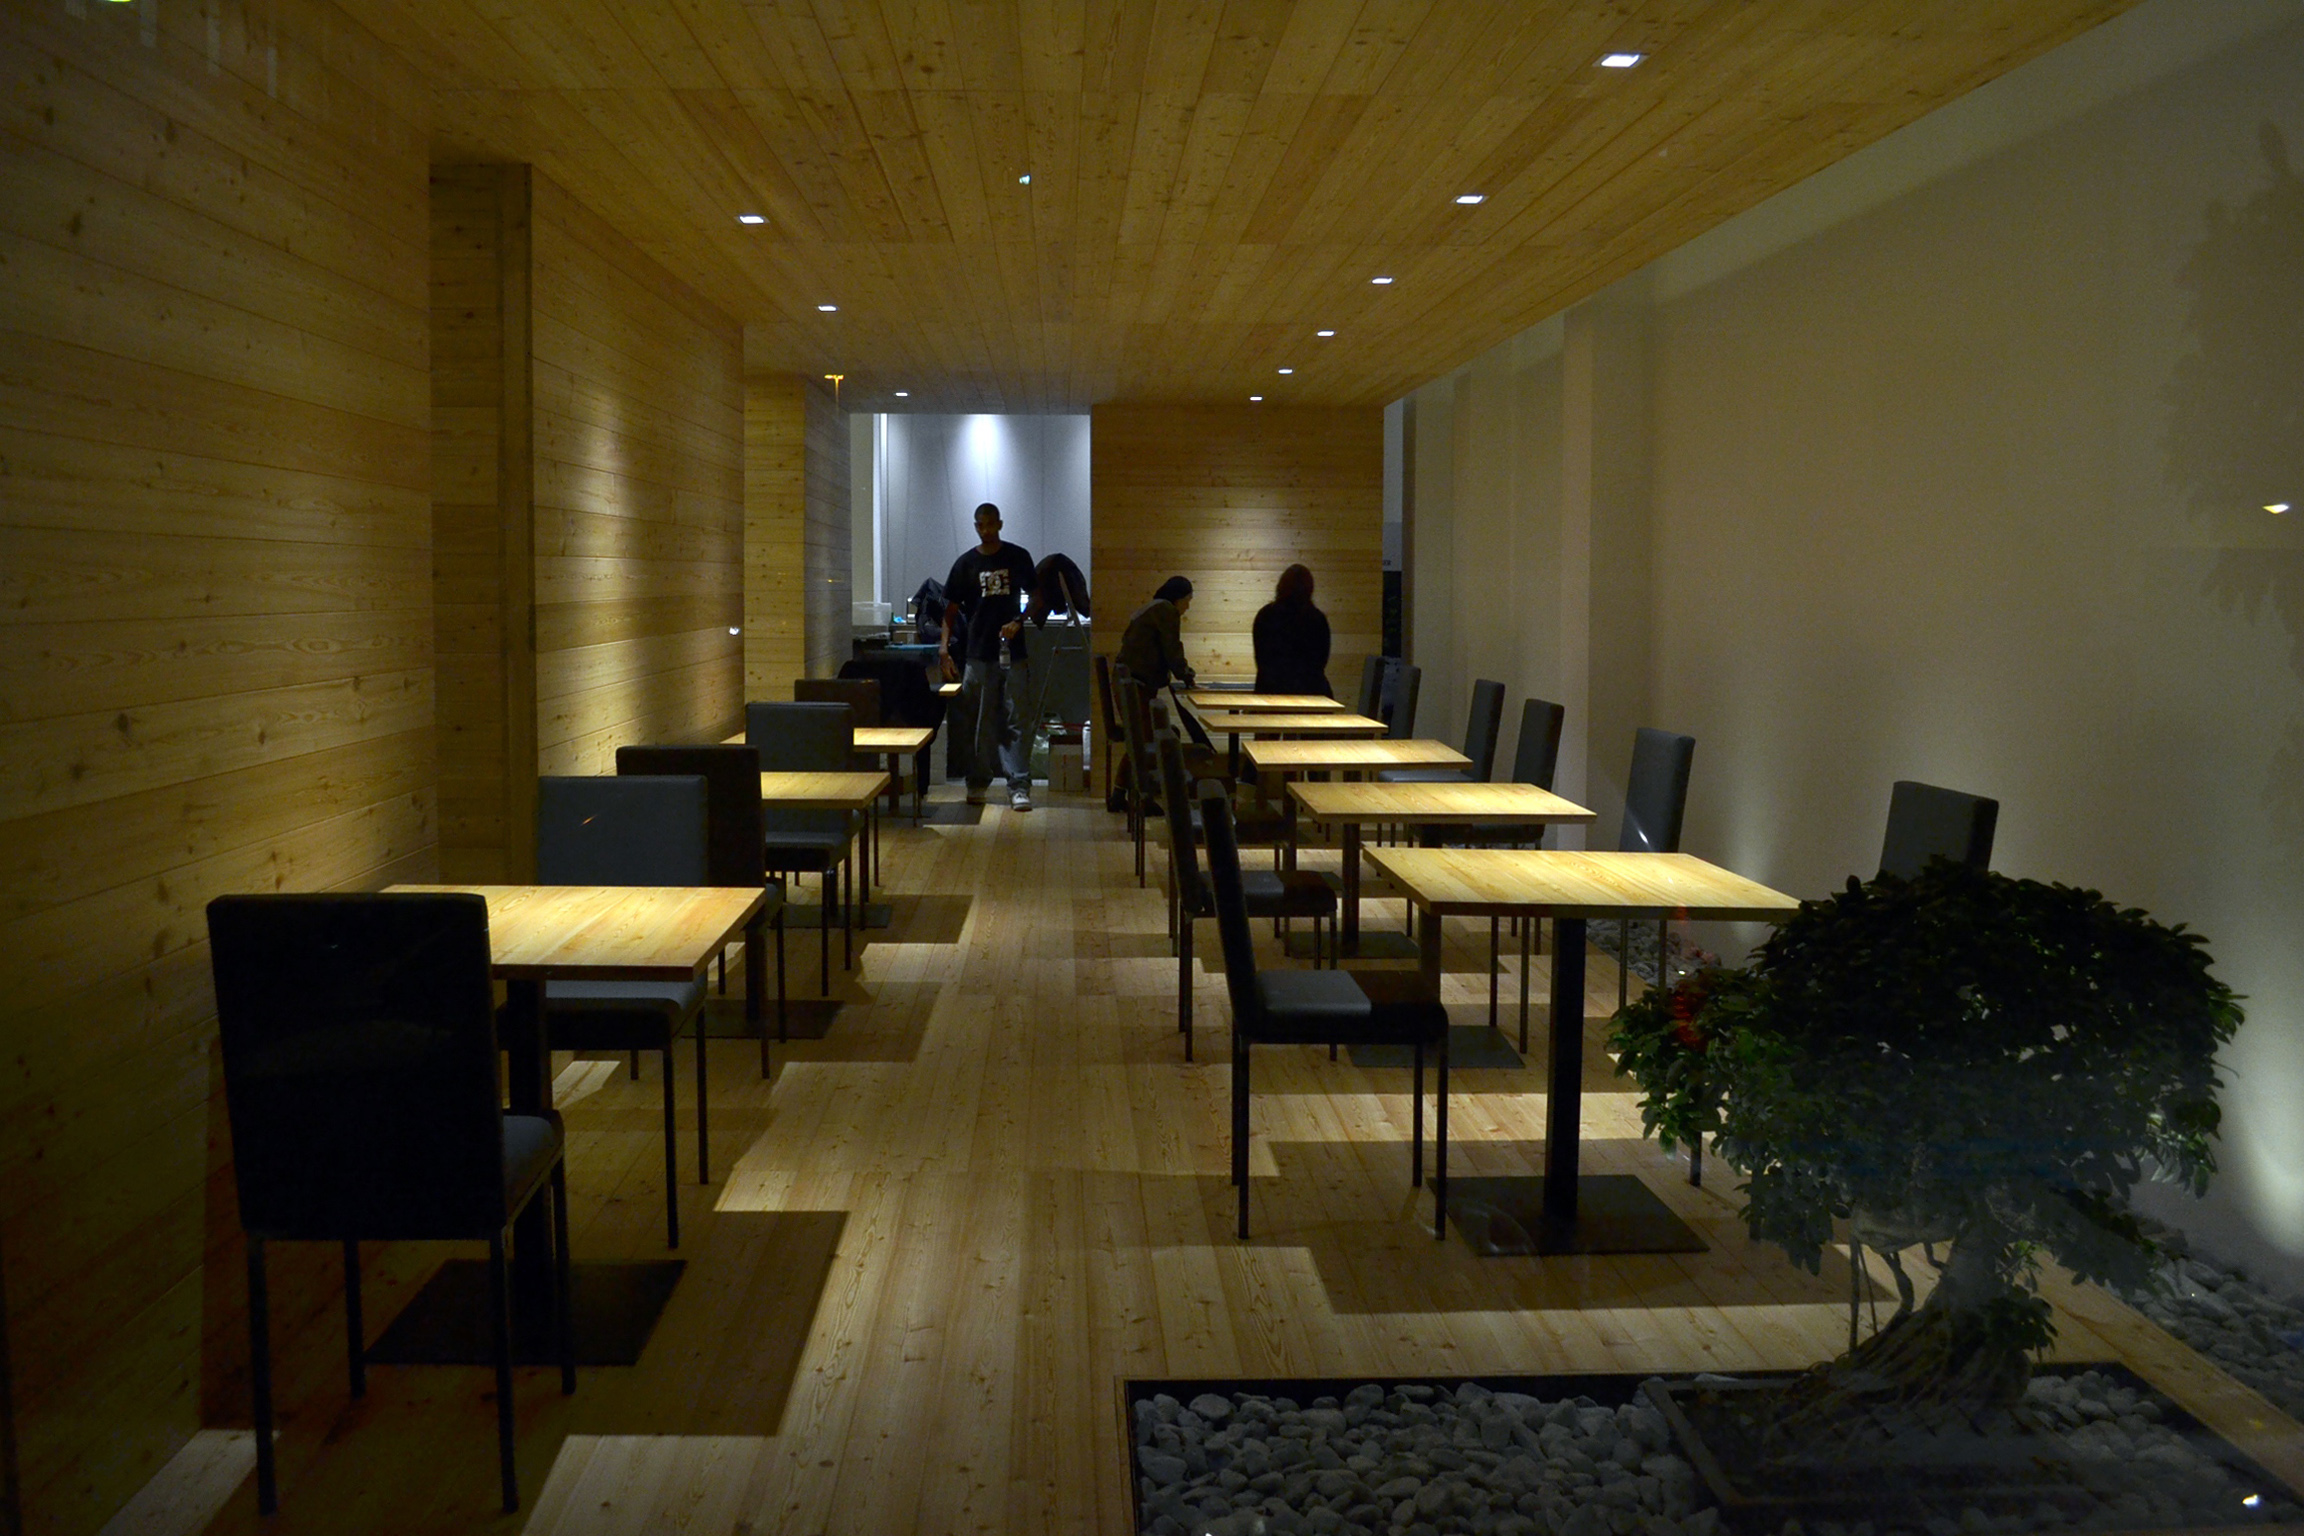 Foto di iKKi Sushi Restaurant a Conegliano Veneto. Veduta interno bancone con personale. Progetto di Machina Architetti Associati, 2011